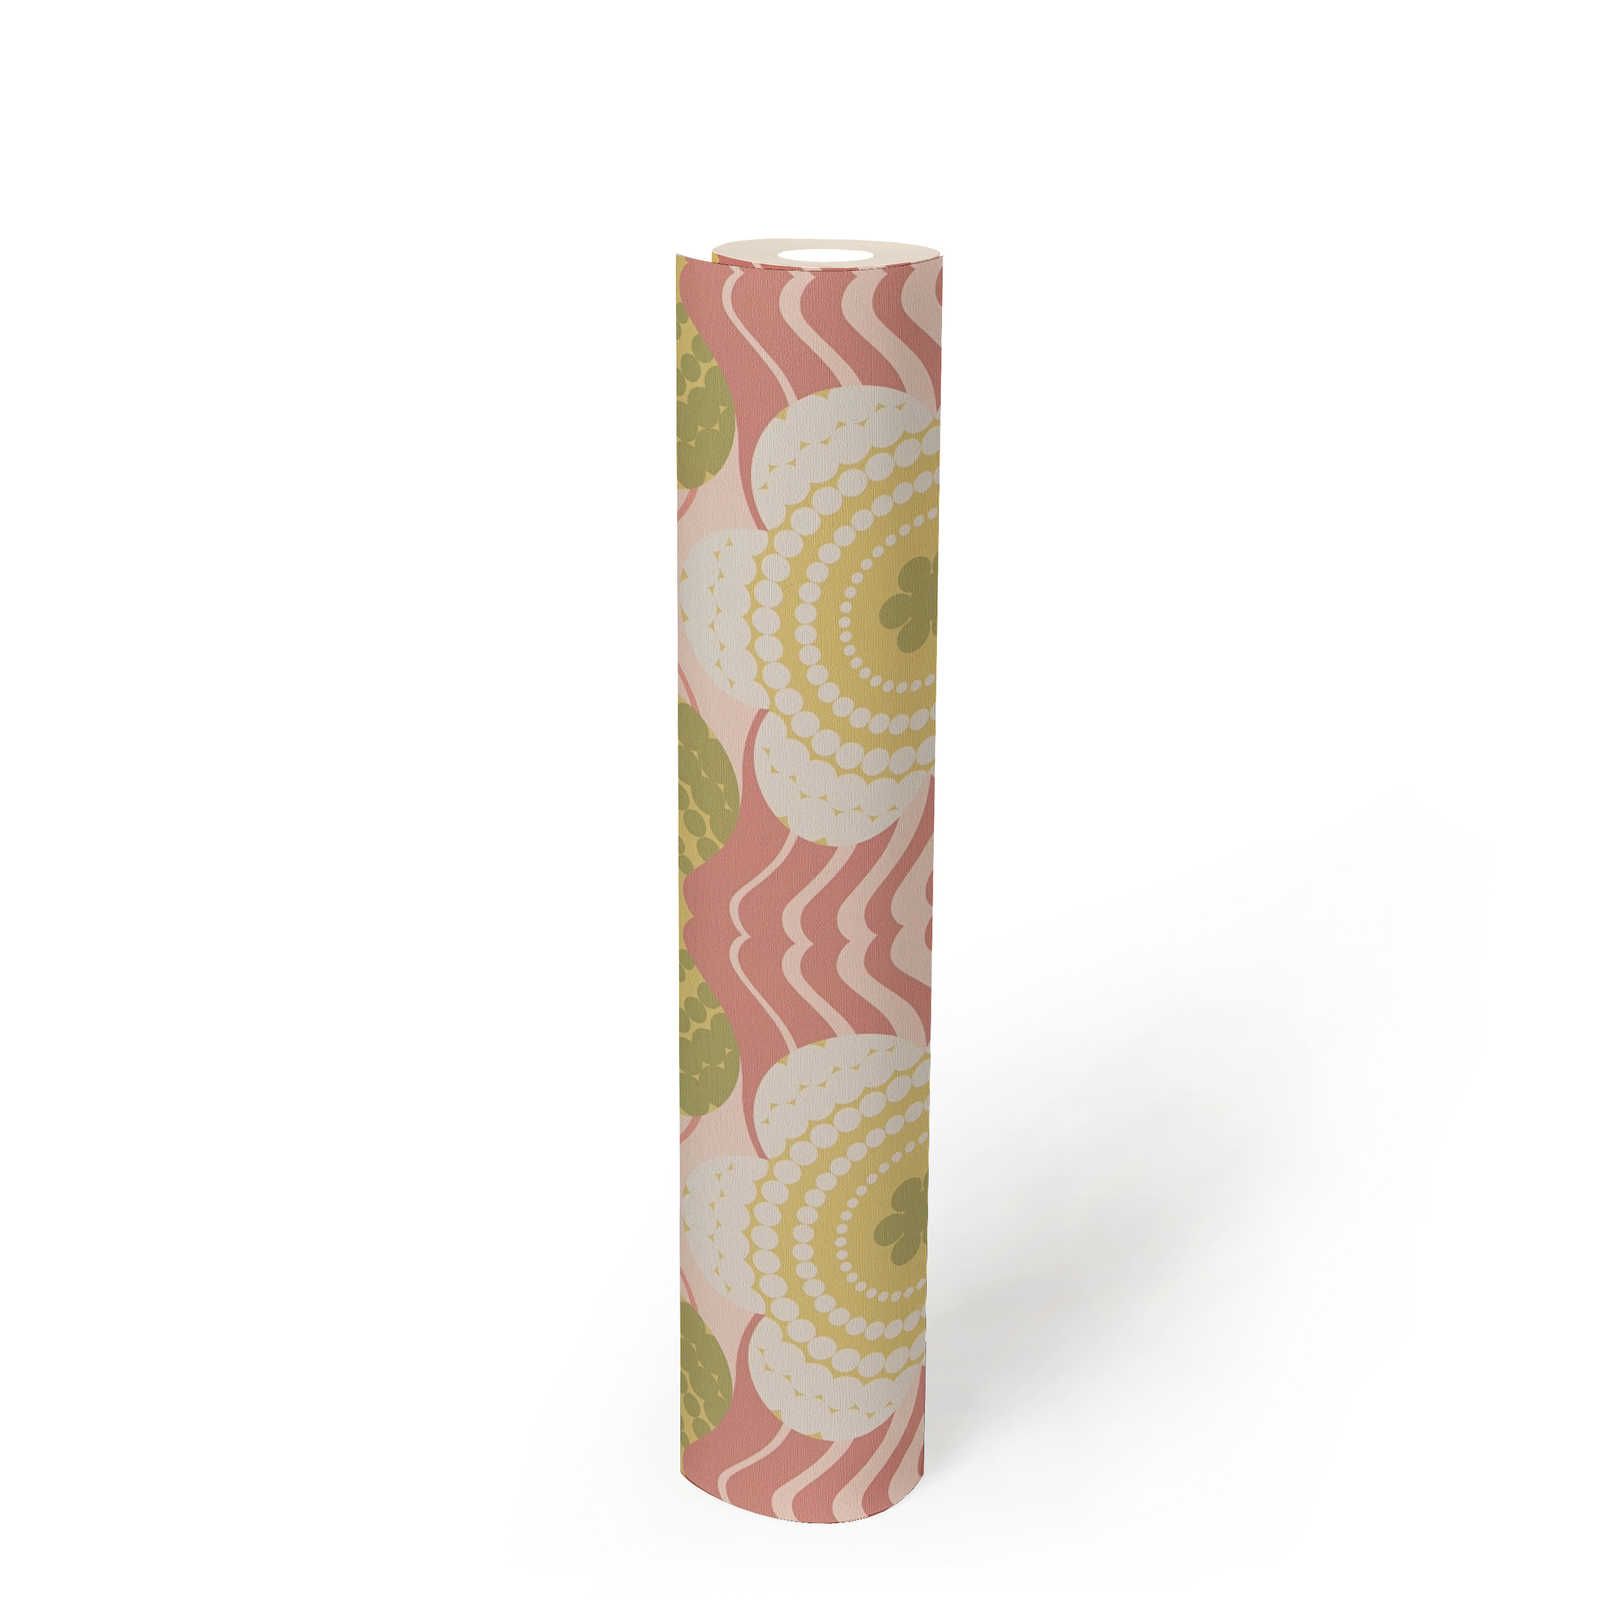             Wellen und Blumen Muster im Retro Stil auf leicht strukturierter Tapete – Rosa, Grün, Creme
        